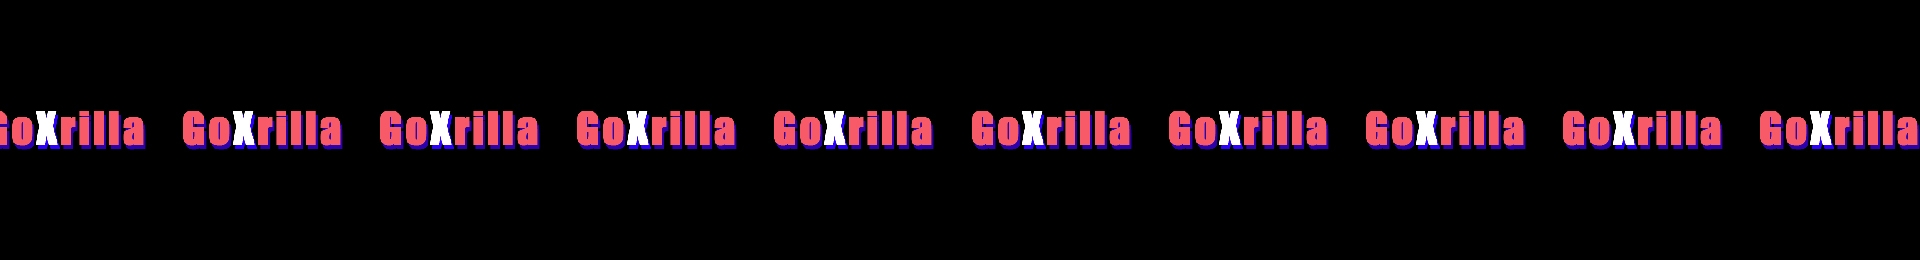 GoXrilla banner